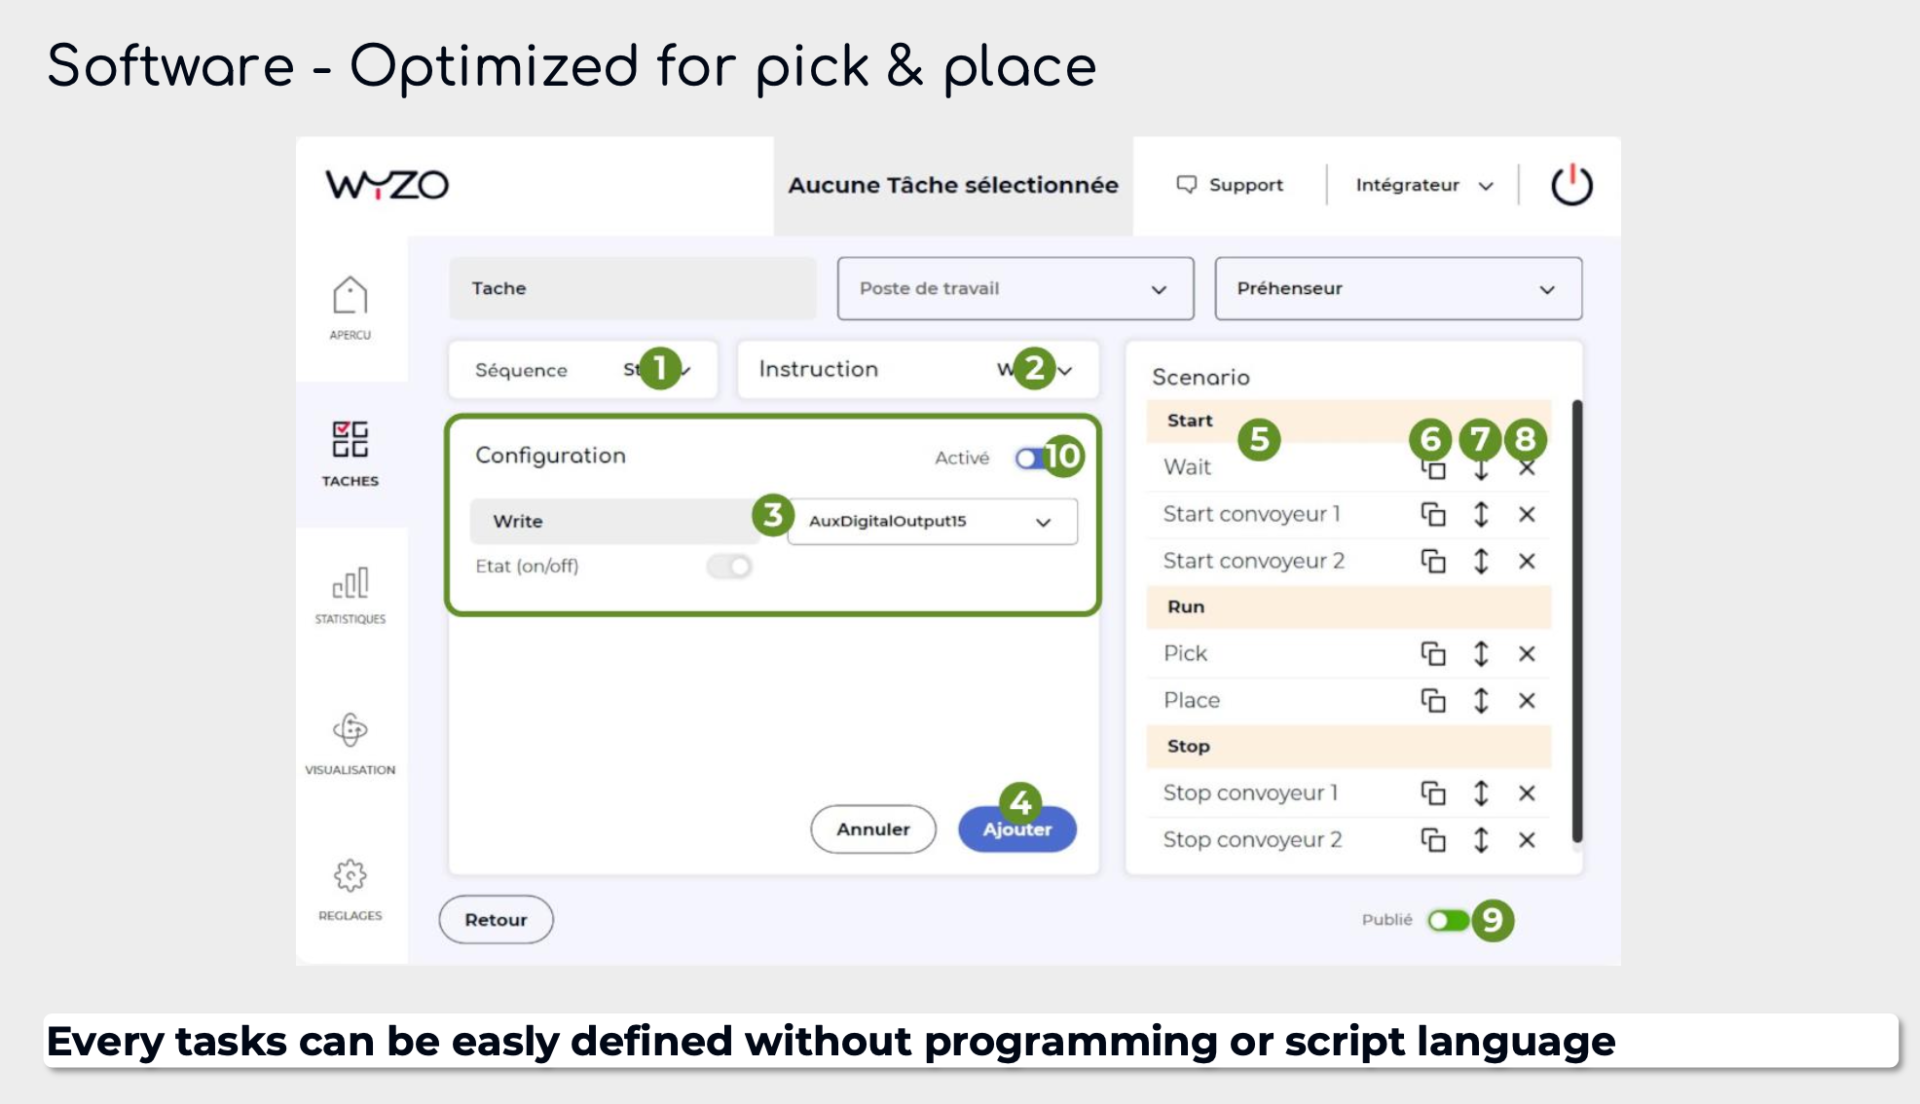 Wyzo sidebot - softvér optimalizovaný pre pick&place - bez písania scriptov